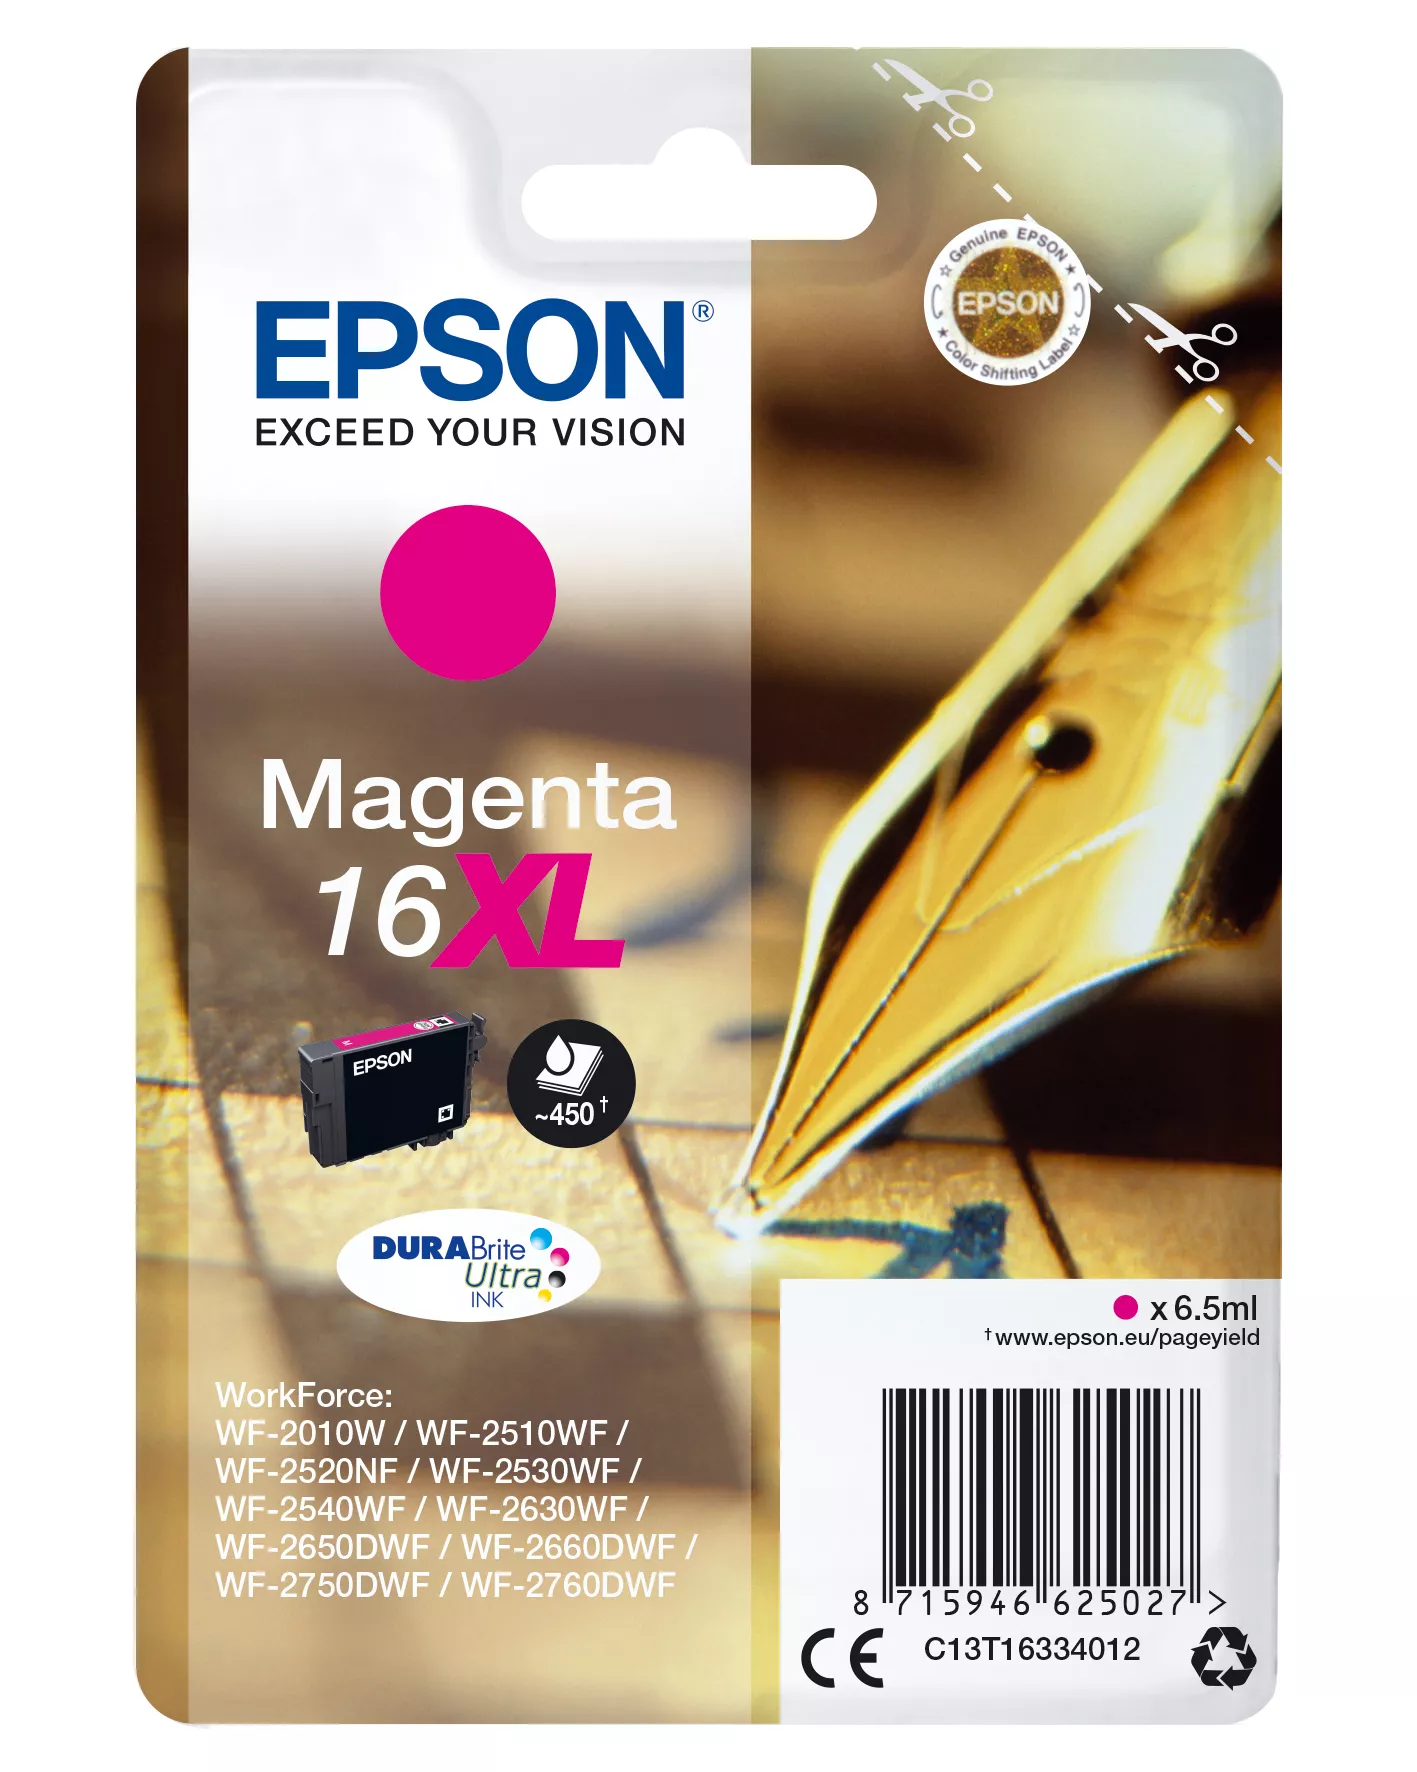 Vente EPSON 16XL cartouche dencre magenta haute capacité 6.5ml au meilleur prix